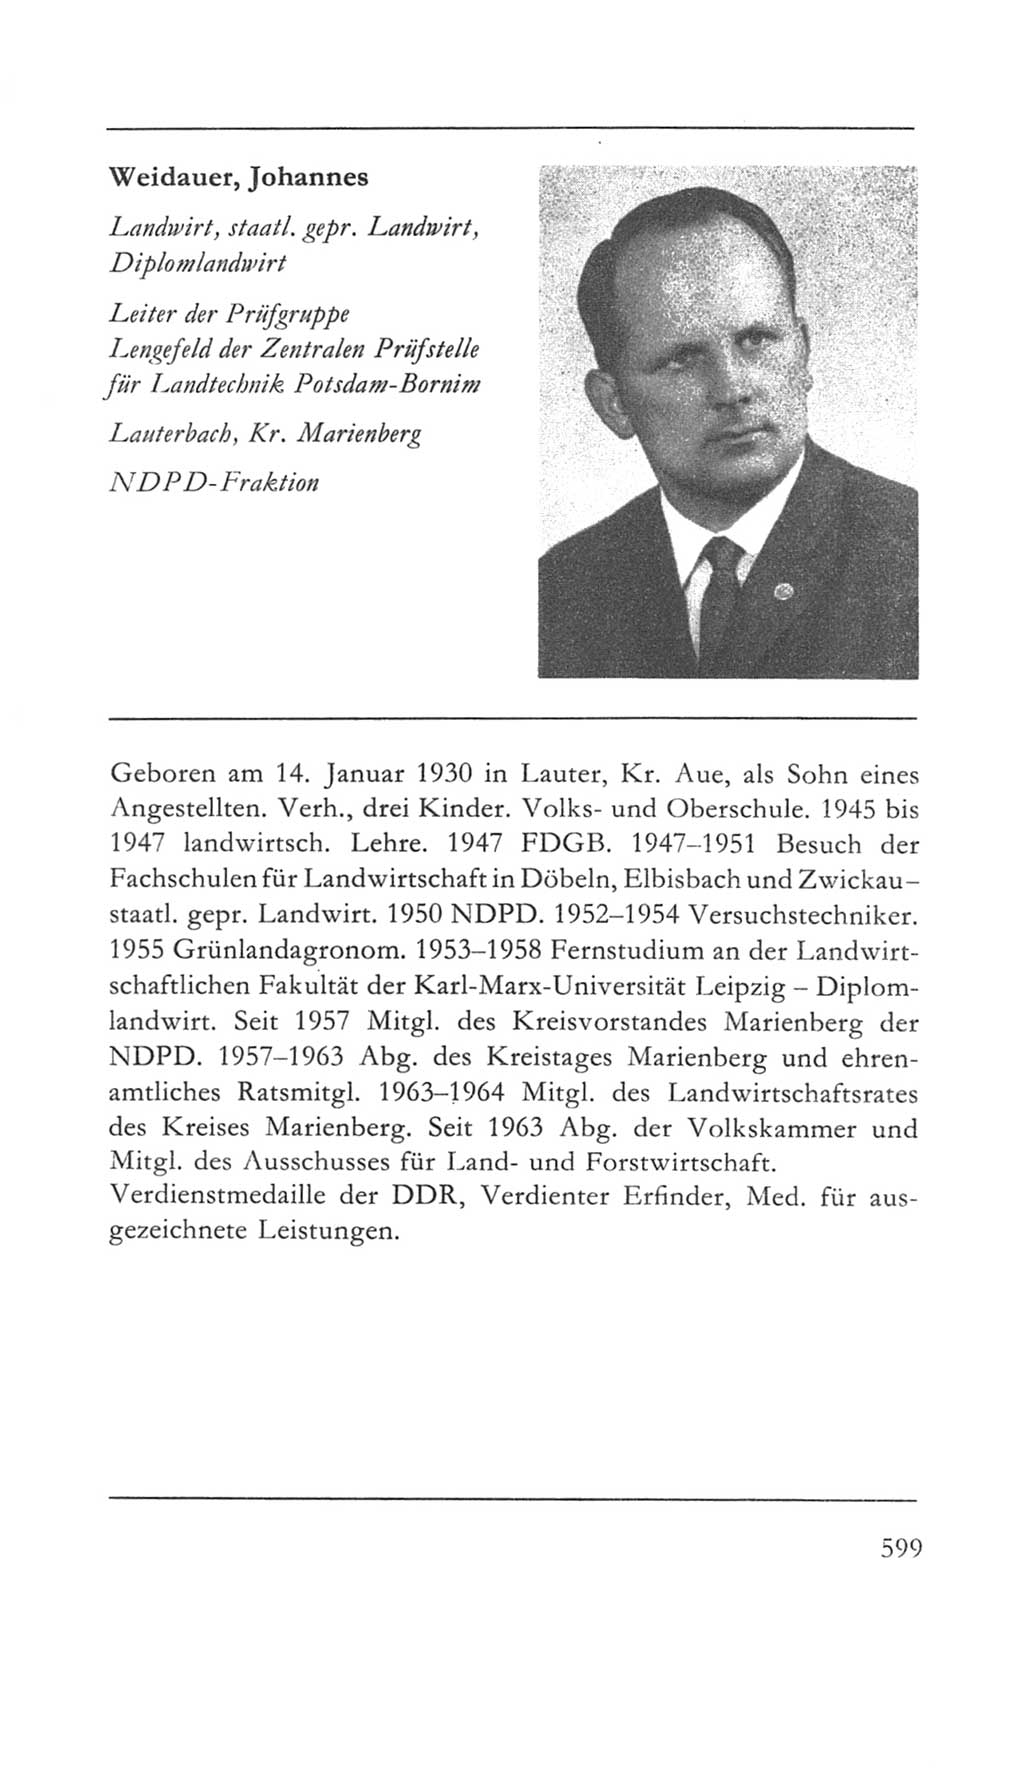 Volkskammer (VK) der Deutschen Demokratischen Republik (DDR) 5. Wahlperiode 1967-1971, Seite 599 (VK. DDR 5. WP. 1967-1971, S. 599)